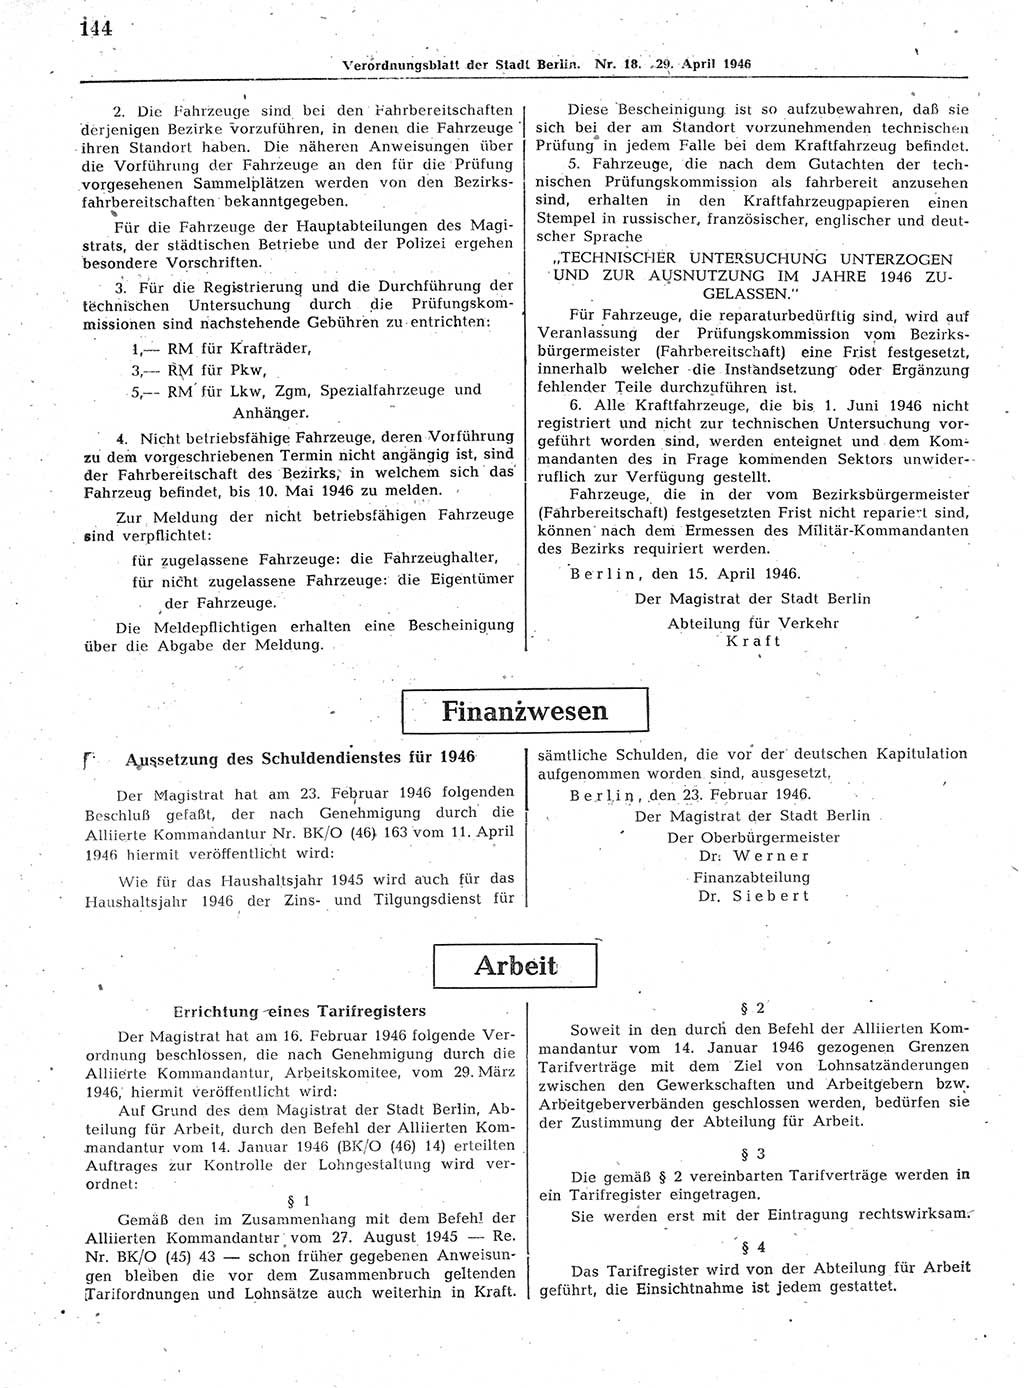 Verordnungsblatt (VOBl.) der Stadt Berlin, für Groß-Berlin 1946, Seite 144 (VOBl. Bln. 1946, S. 144)